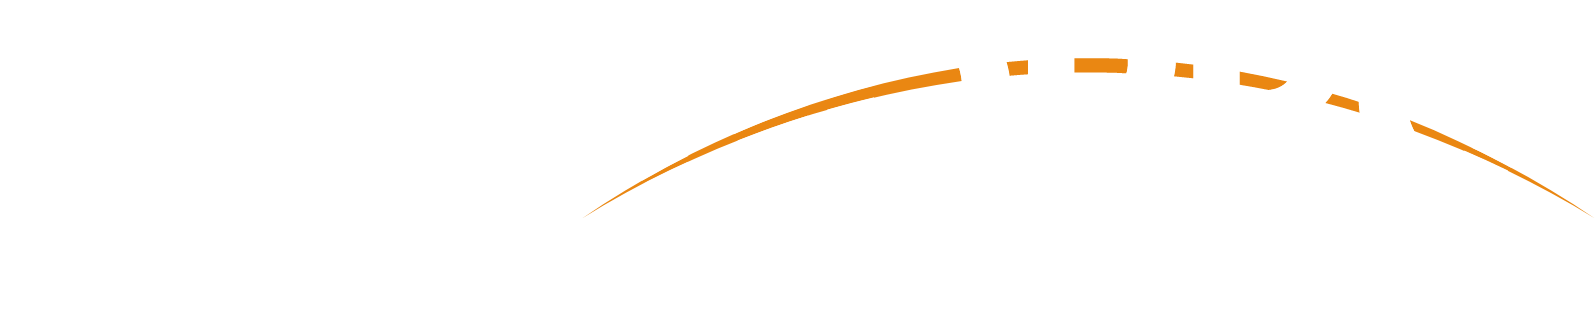 TechnoPro Holdings logo grand pour les fonds sombres (PNG transparent)